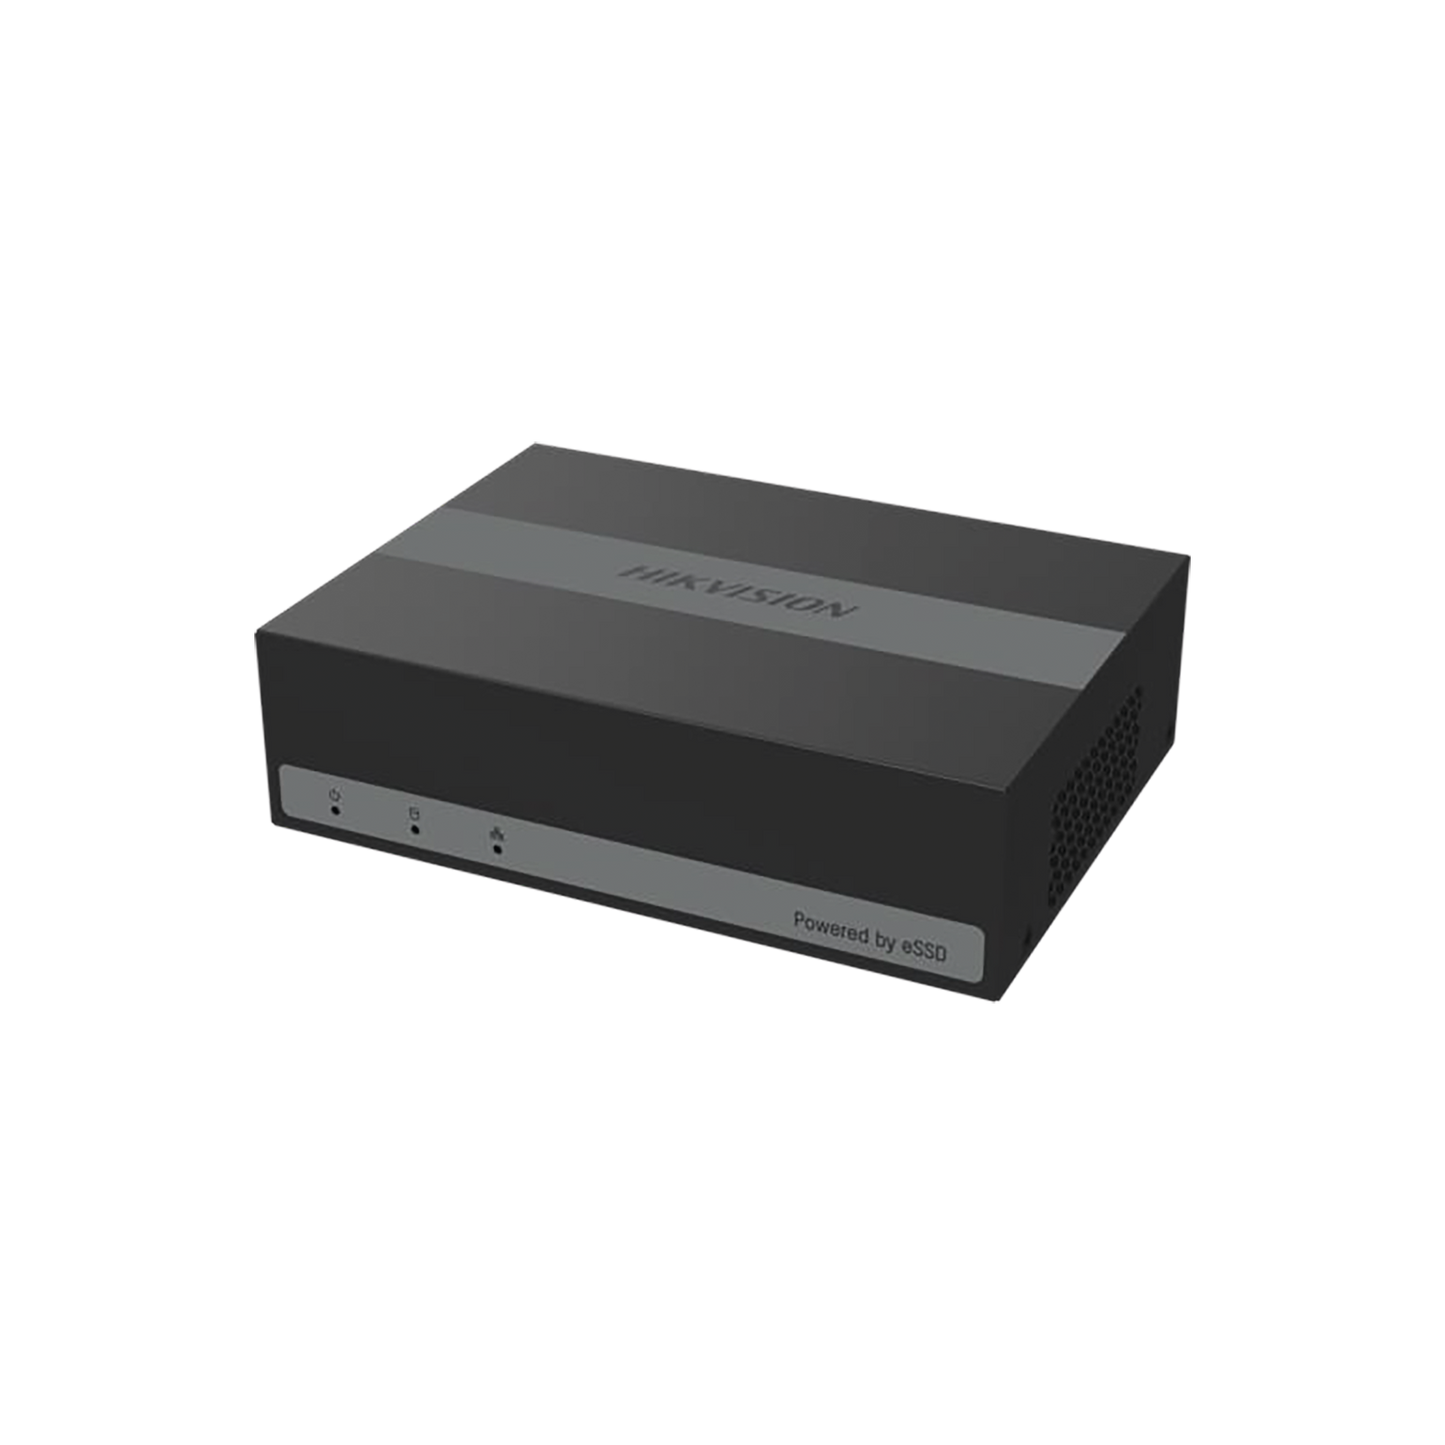 DVR 2 Megapíxel (1080p) Lite / 8 Canales TurboHD + 2 Canales IP / 15 Días de Grabación / Unidad de Estado Solido Incluido / H.265+ / Acusense Lite (Evita Falsas Alarmas) /  Diseño Ultra Compacto / Extra Silencioso / eSSD de 480